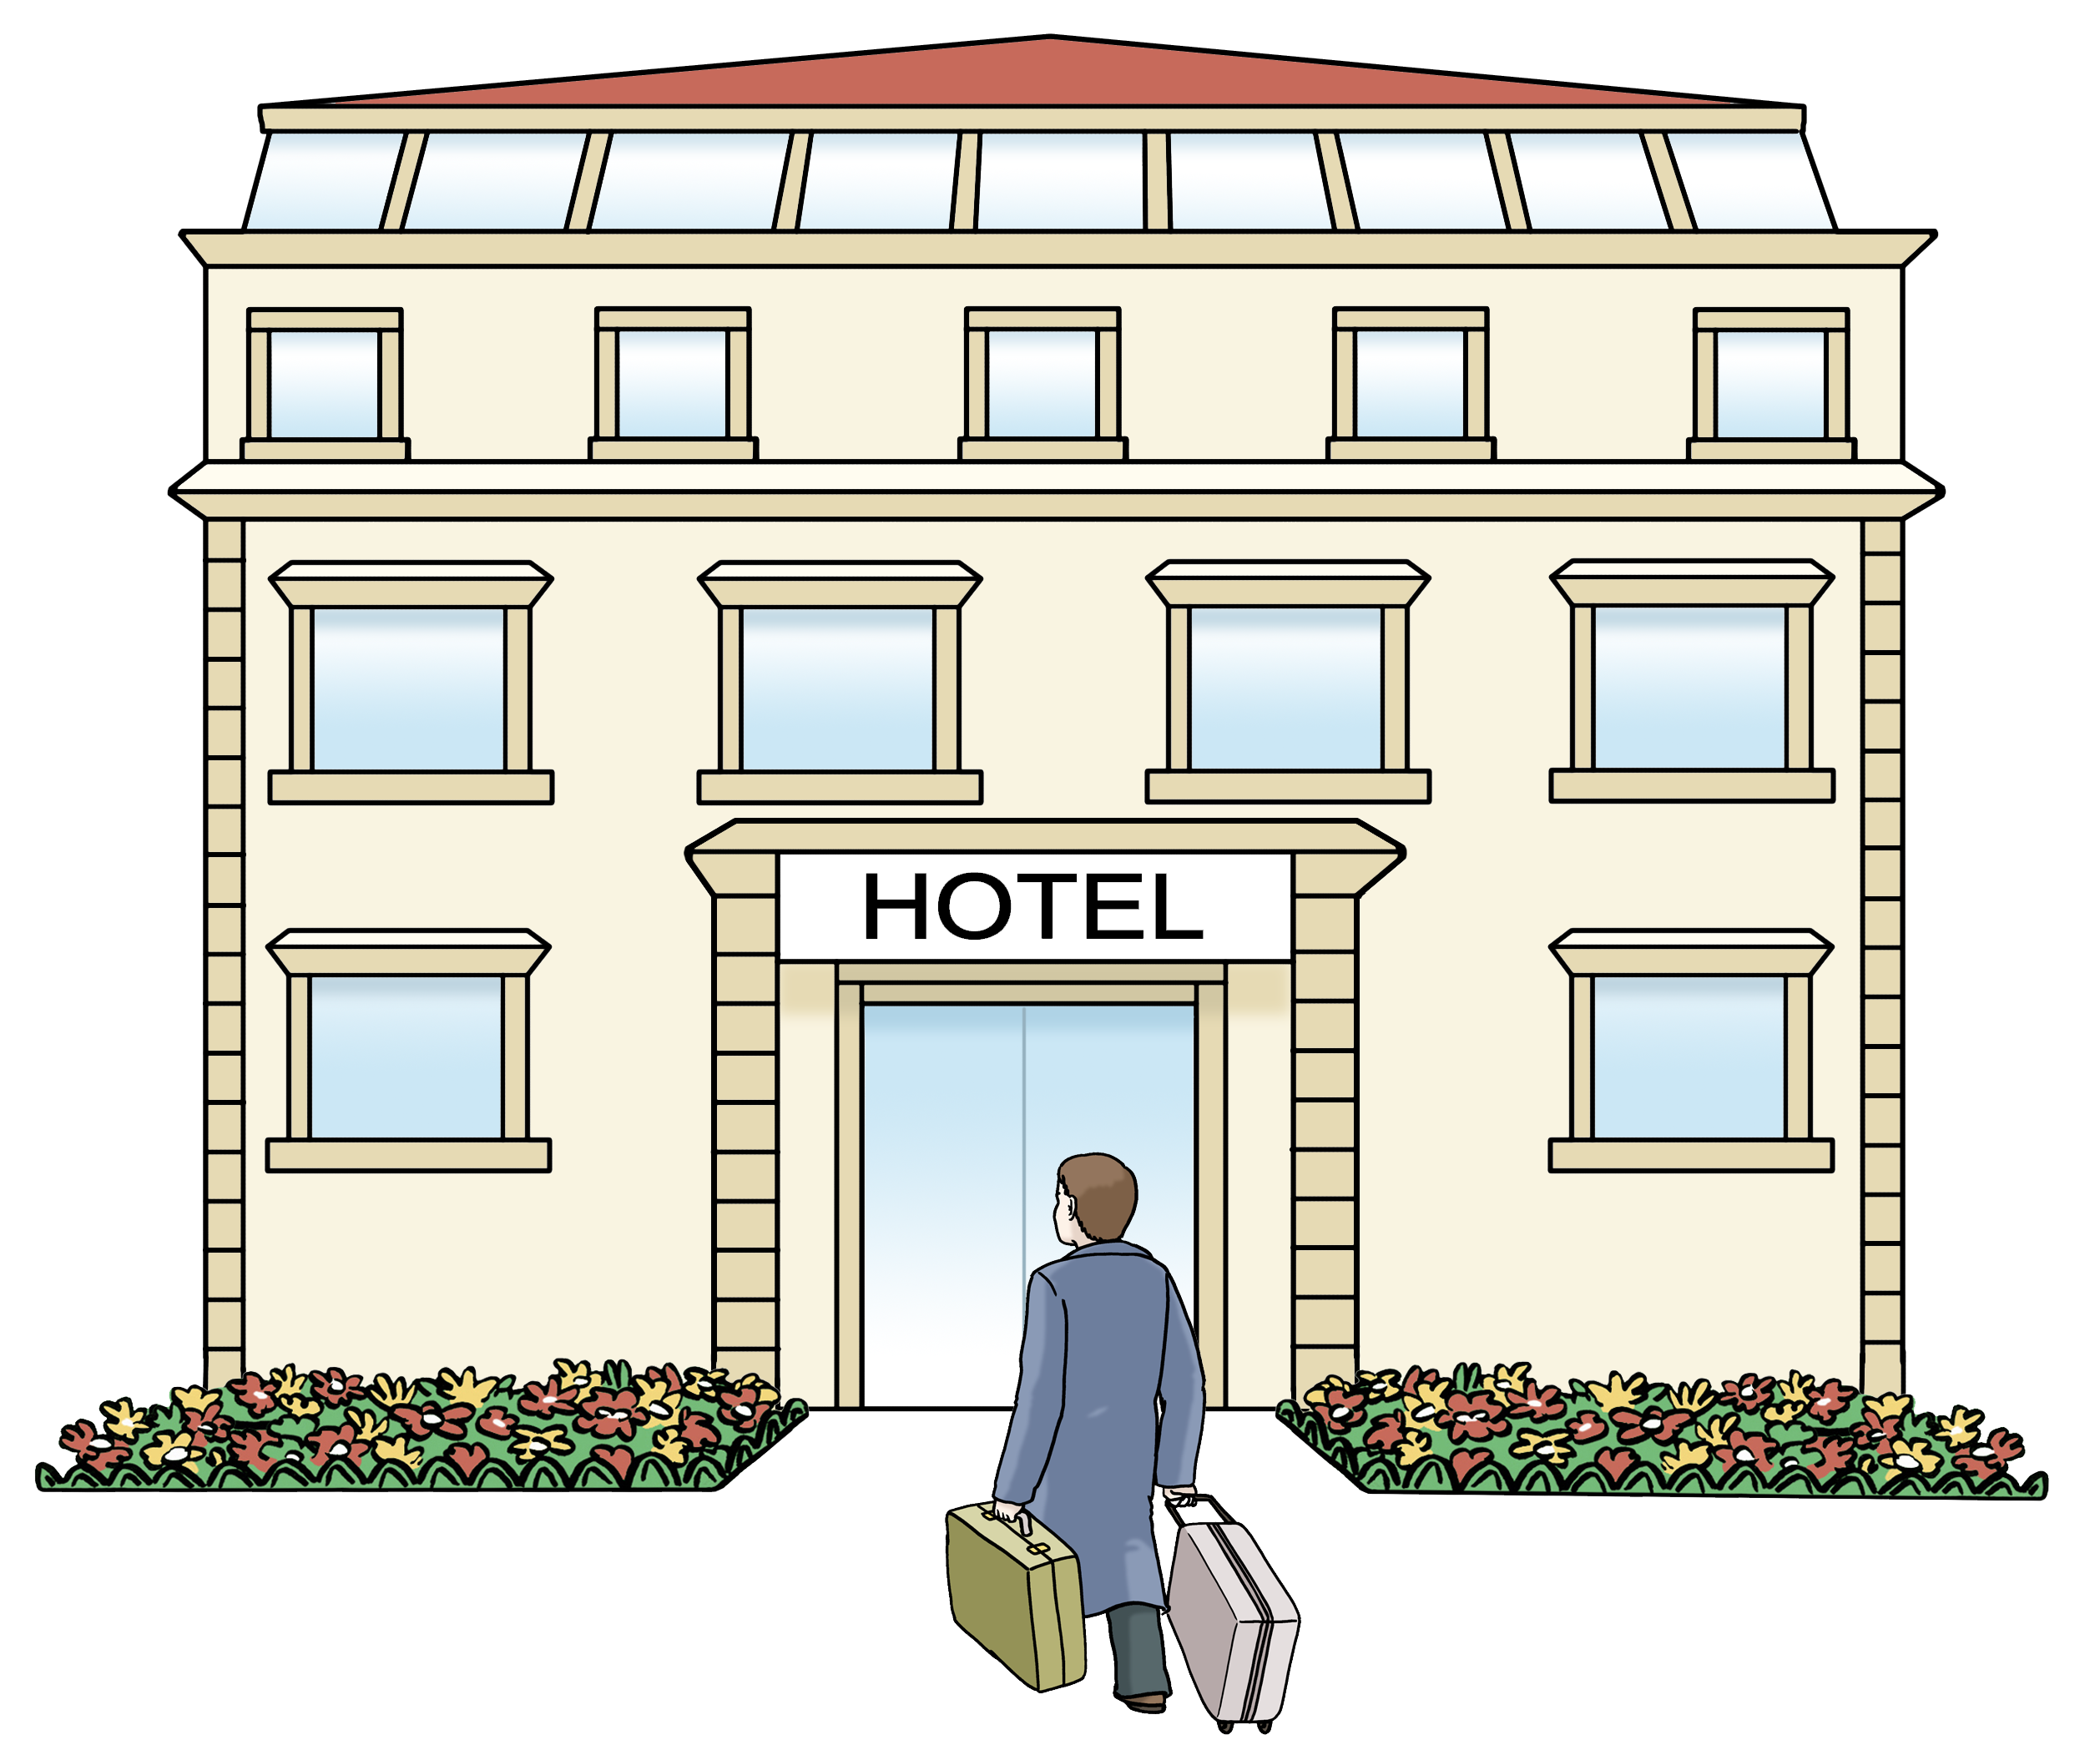 Leichte Sprache Bild: Ein Mensch mit Koffern betritt ein Hotel